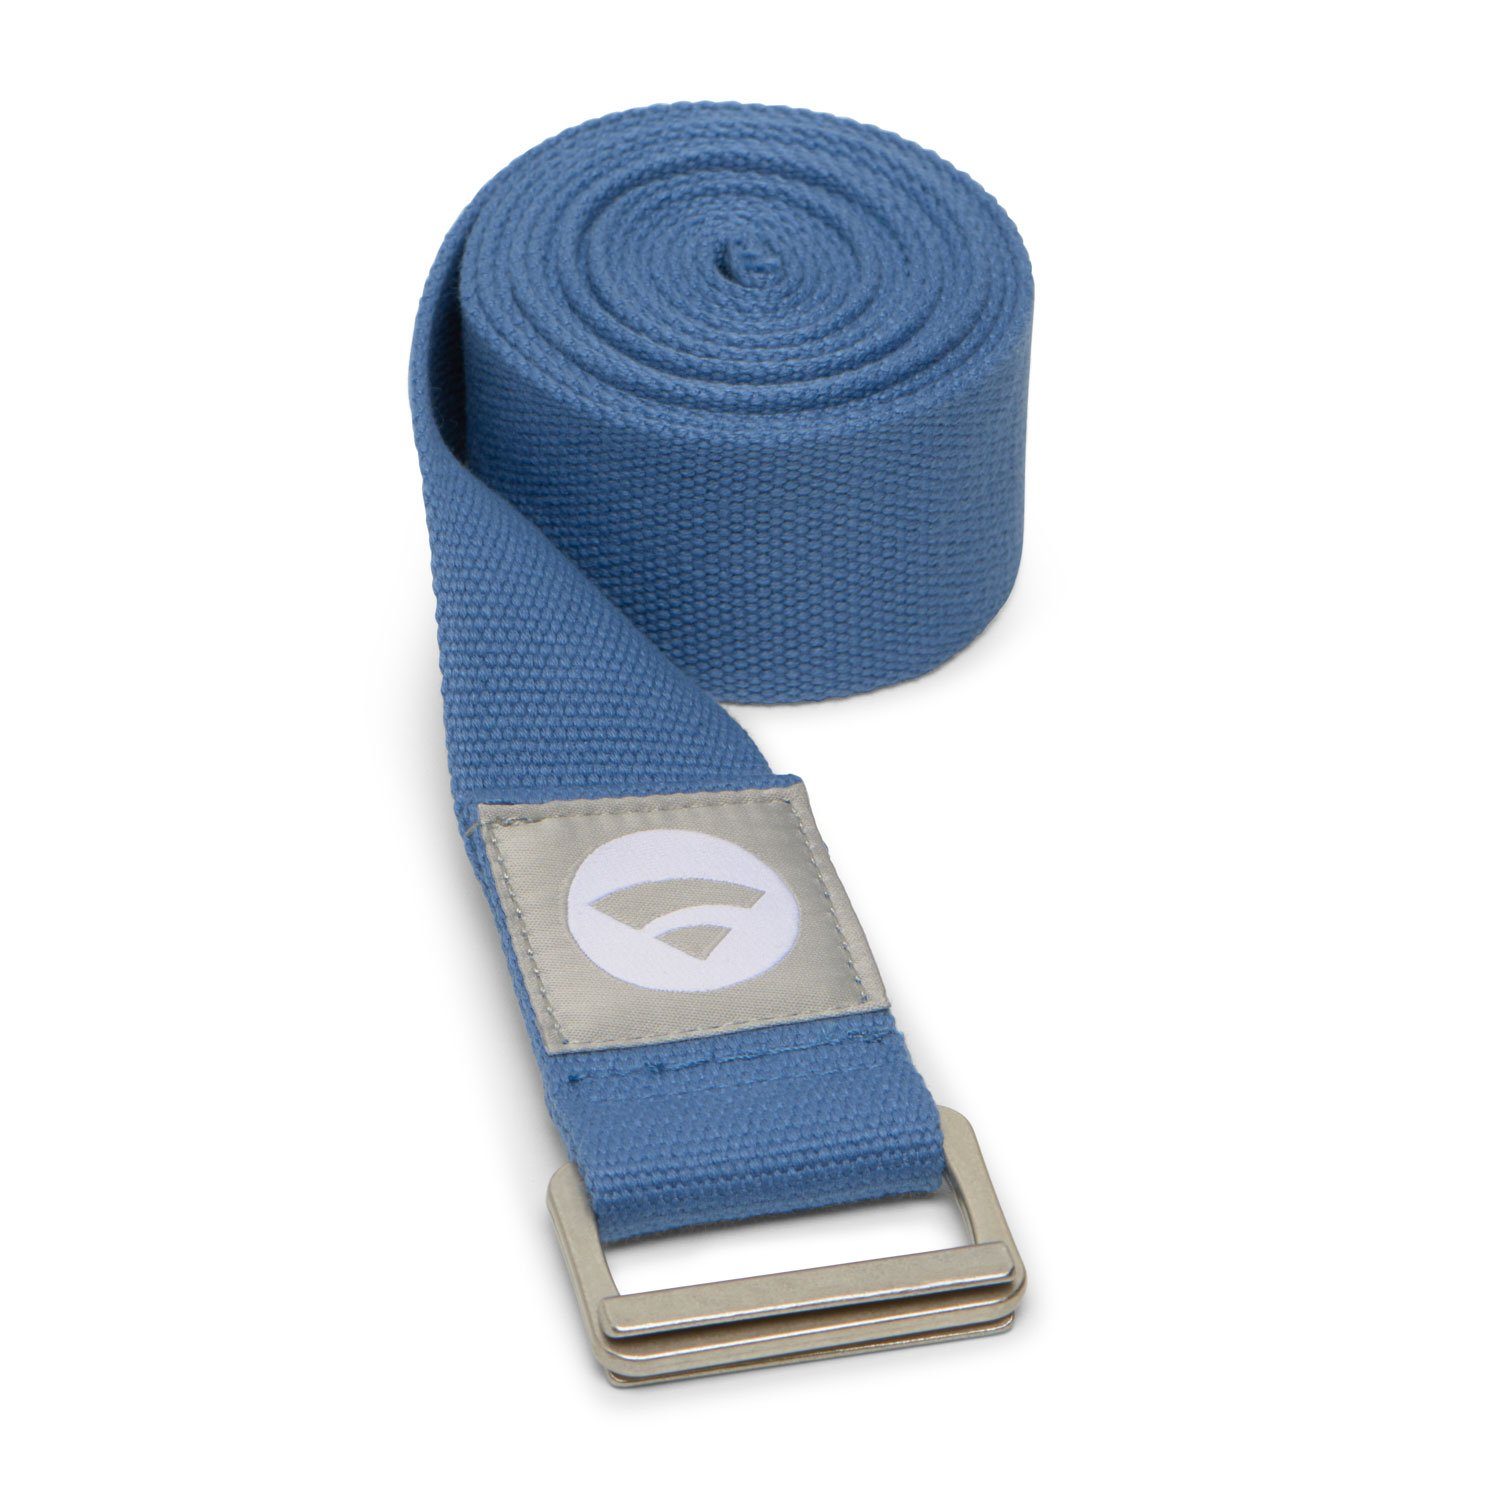 bodhi Yogamatte PADMA Yogagurt mit Schnalle blau (moonlight blue)